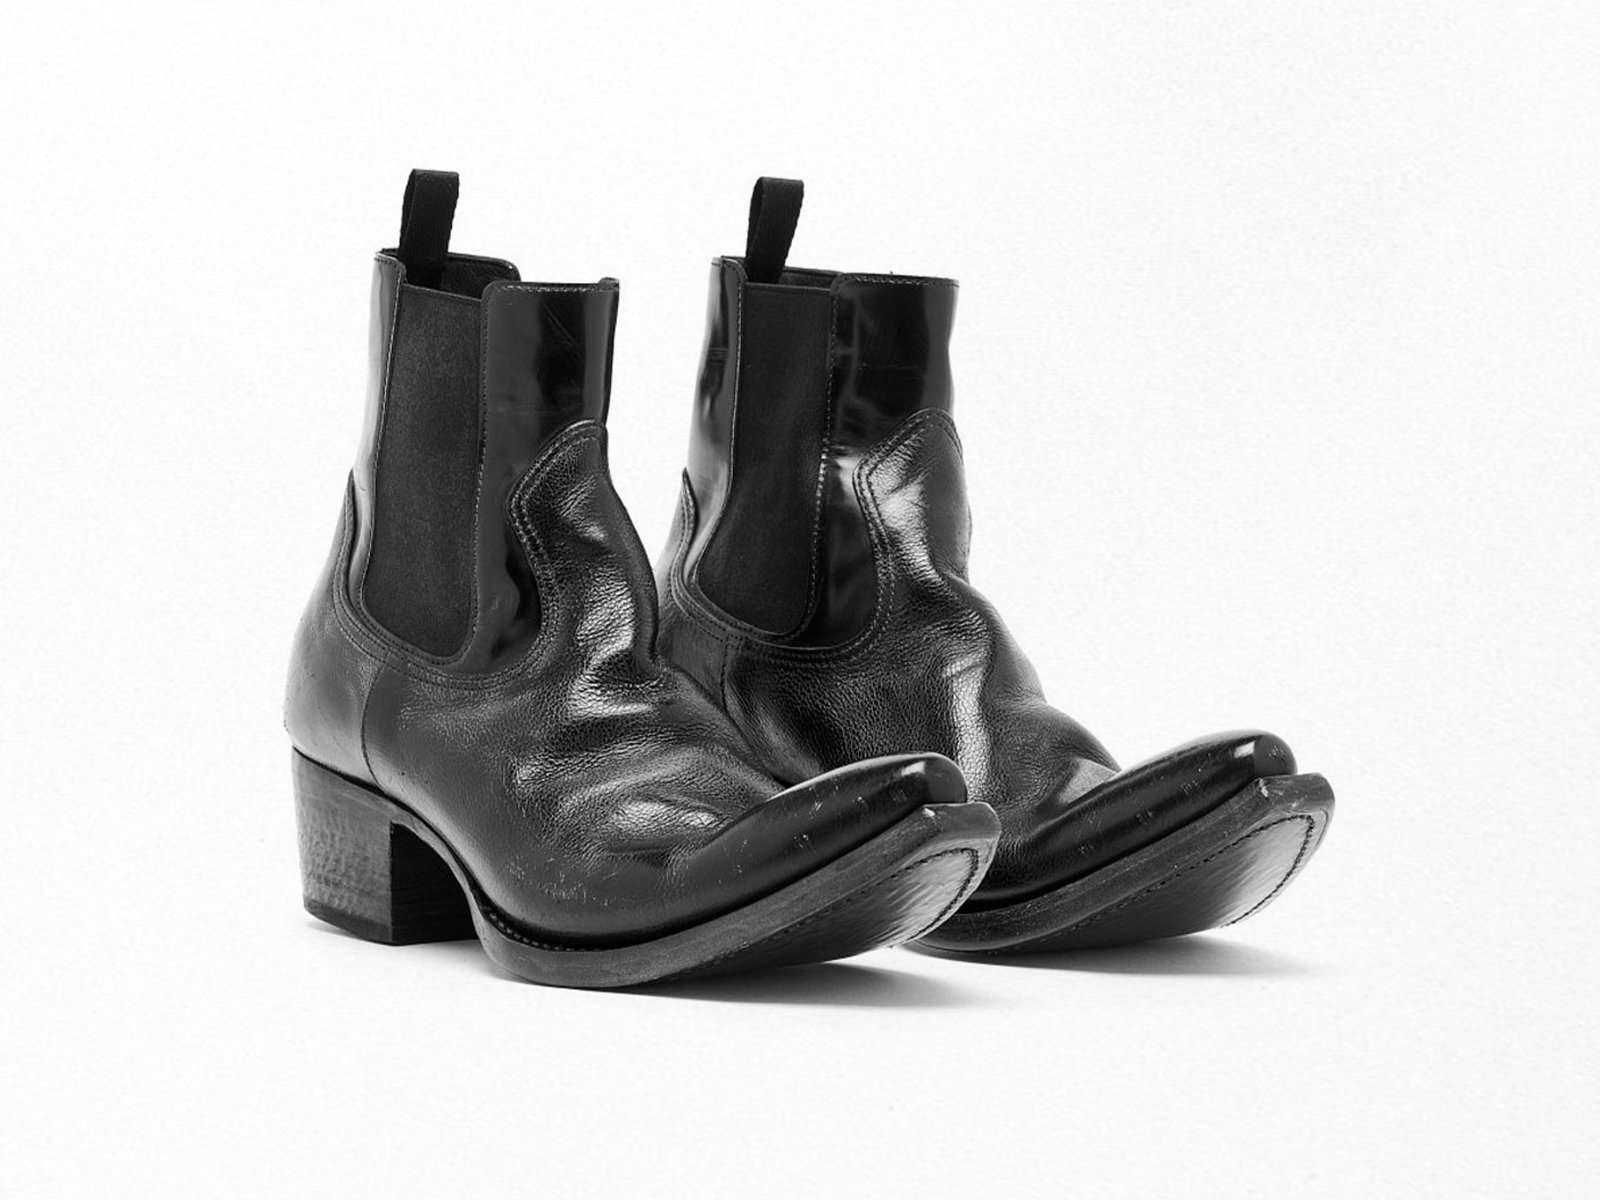 Las nuevas botas de Prada fusionan los conceptos de atemporalidad y modernidad